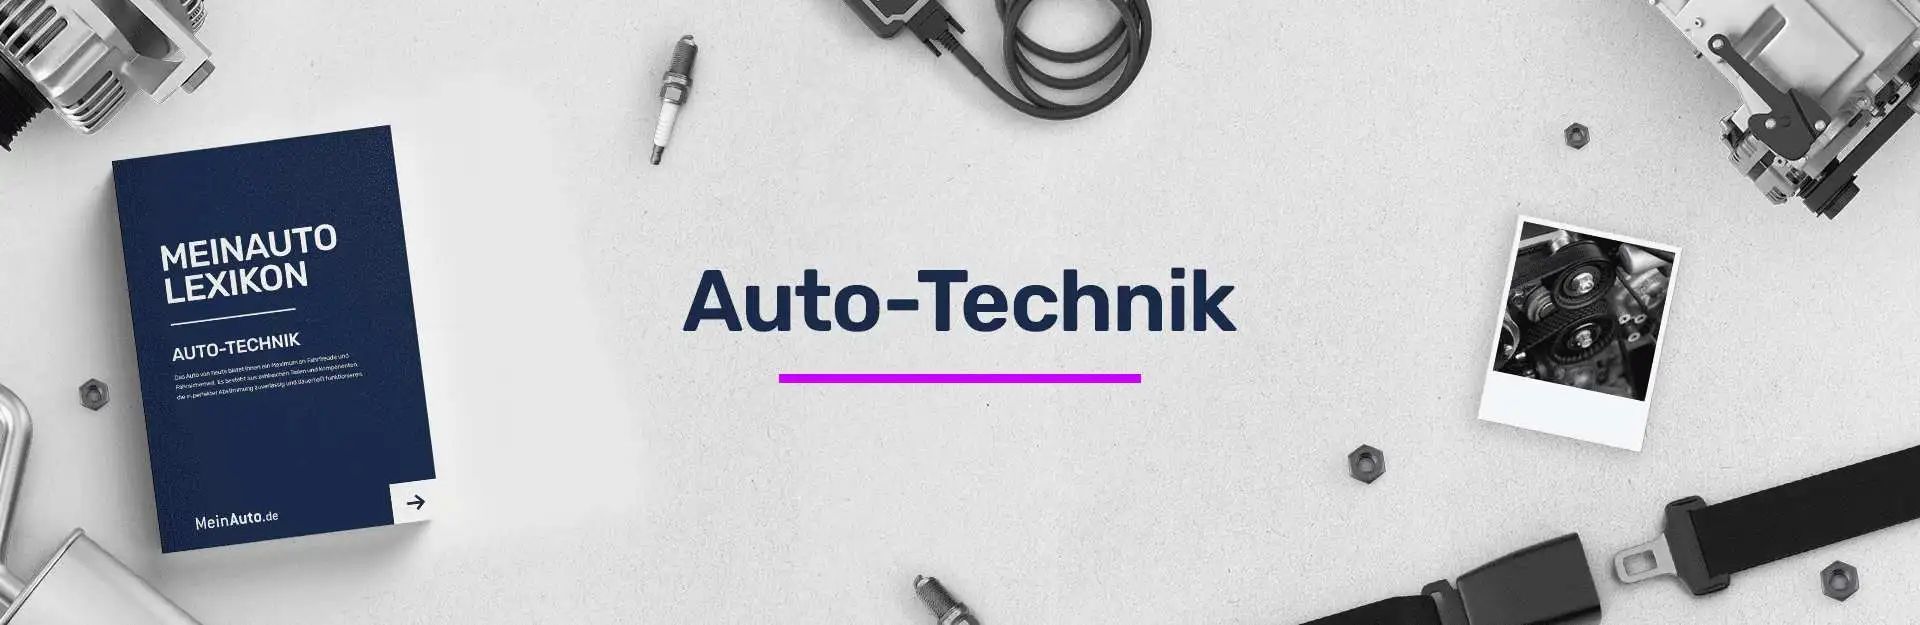 auto-technik